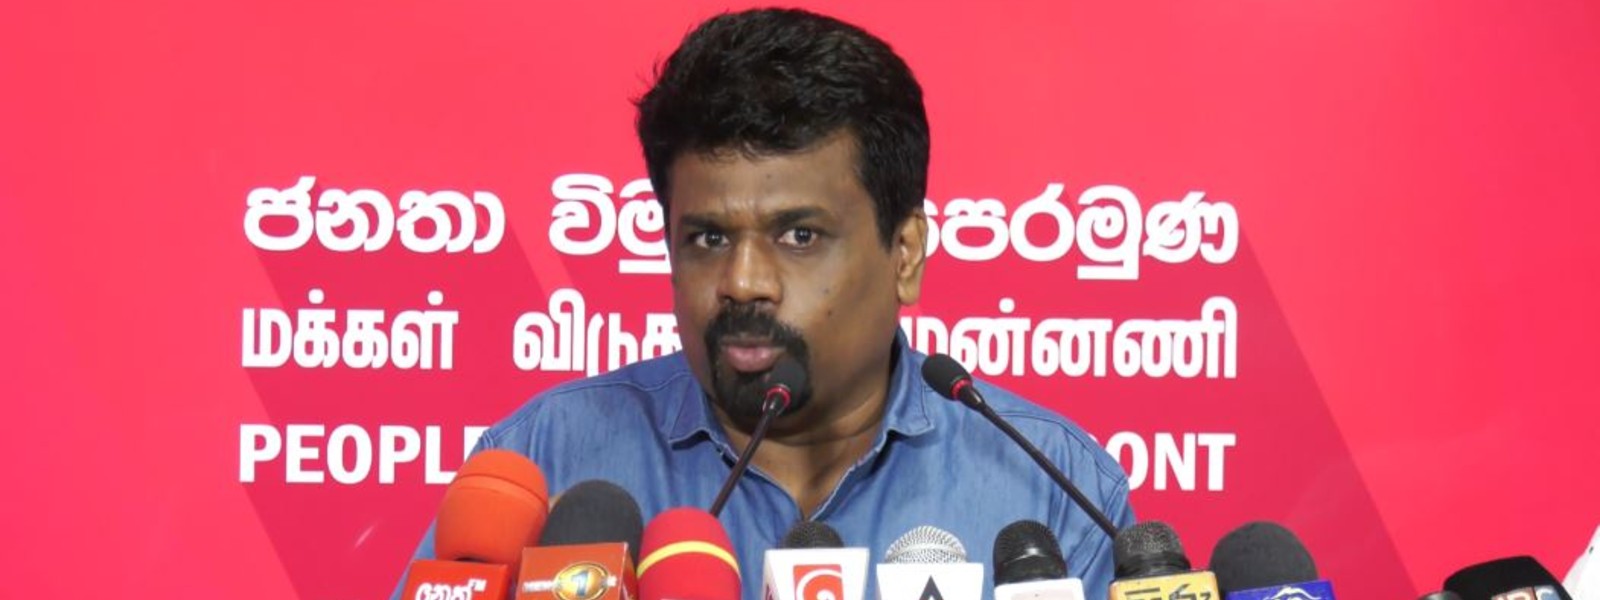 NPP ready to lead and rebuild Sri Lanka – Anura Kumara